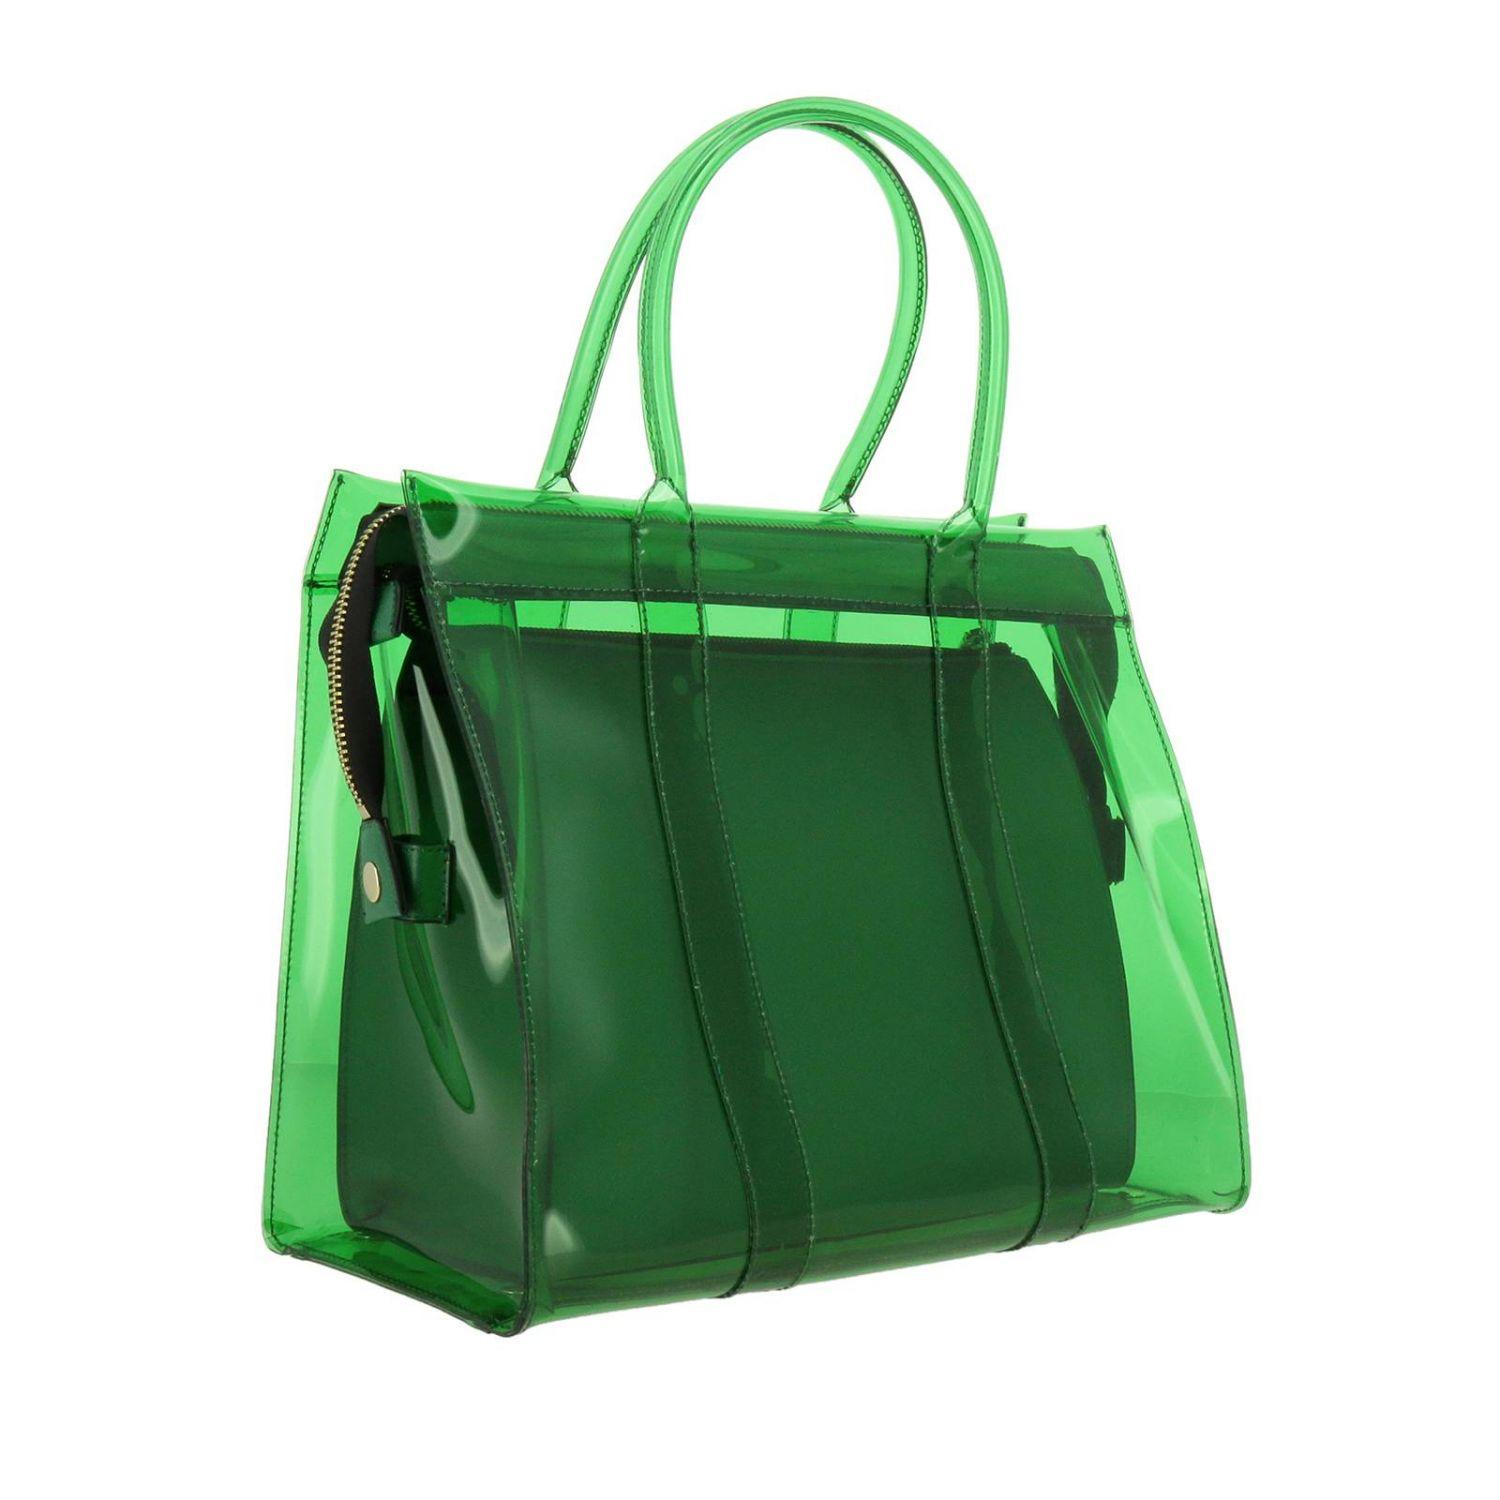 Essentiel Antwerp Handbag Shoulder Bag Women in Green - Lyst